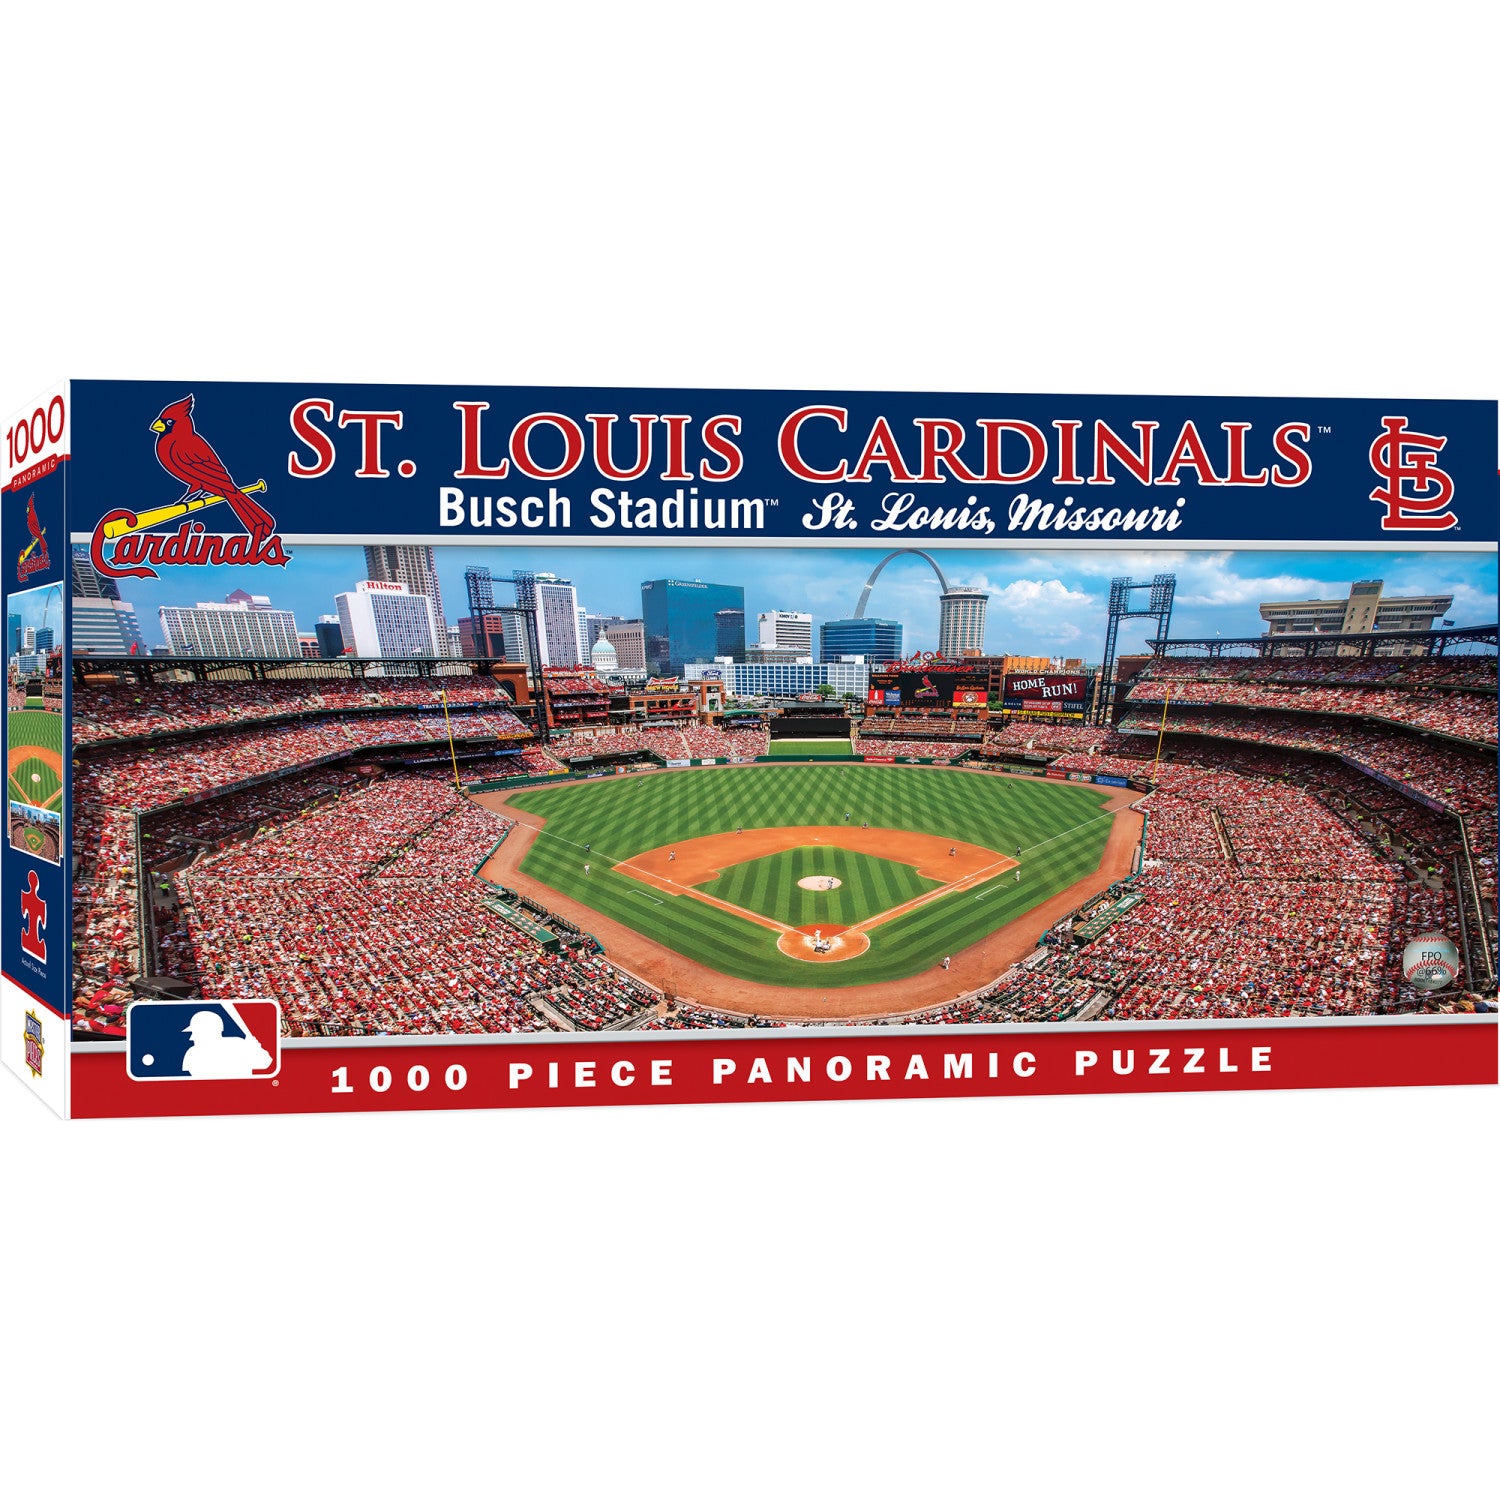 St. Louis Cardinals - 1000 Piece Panoramic Jigsaw Puzzle